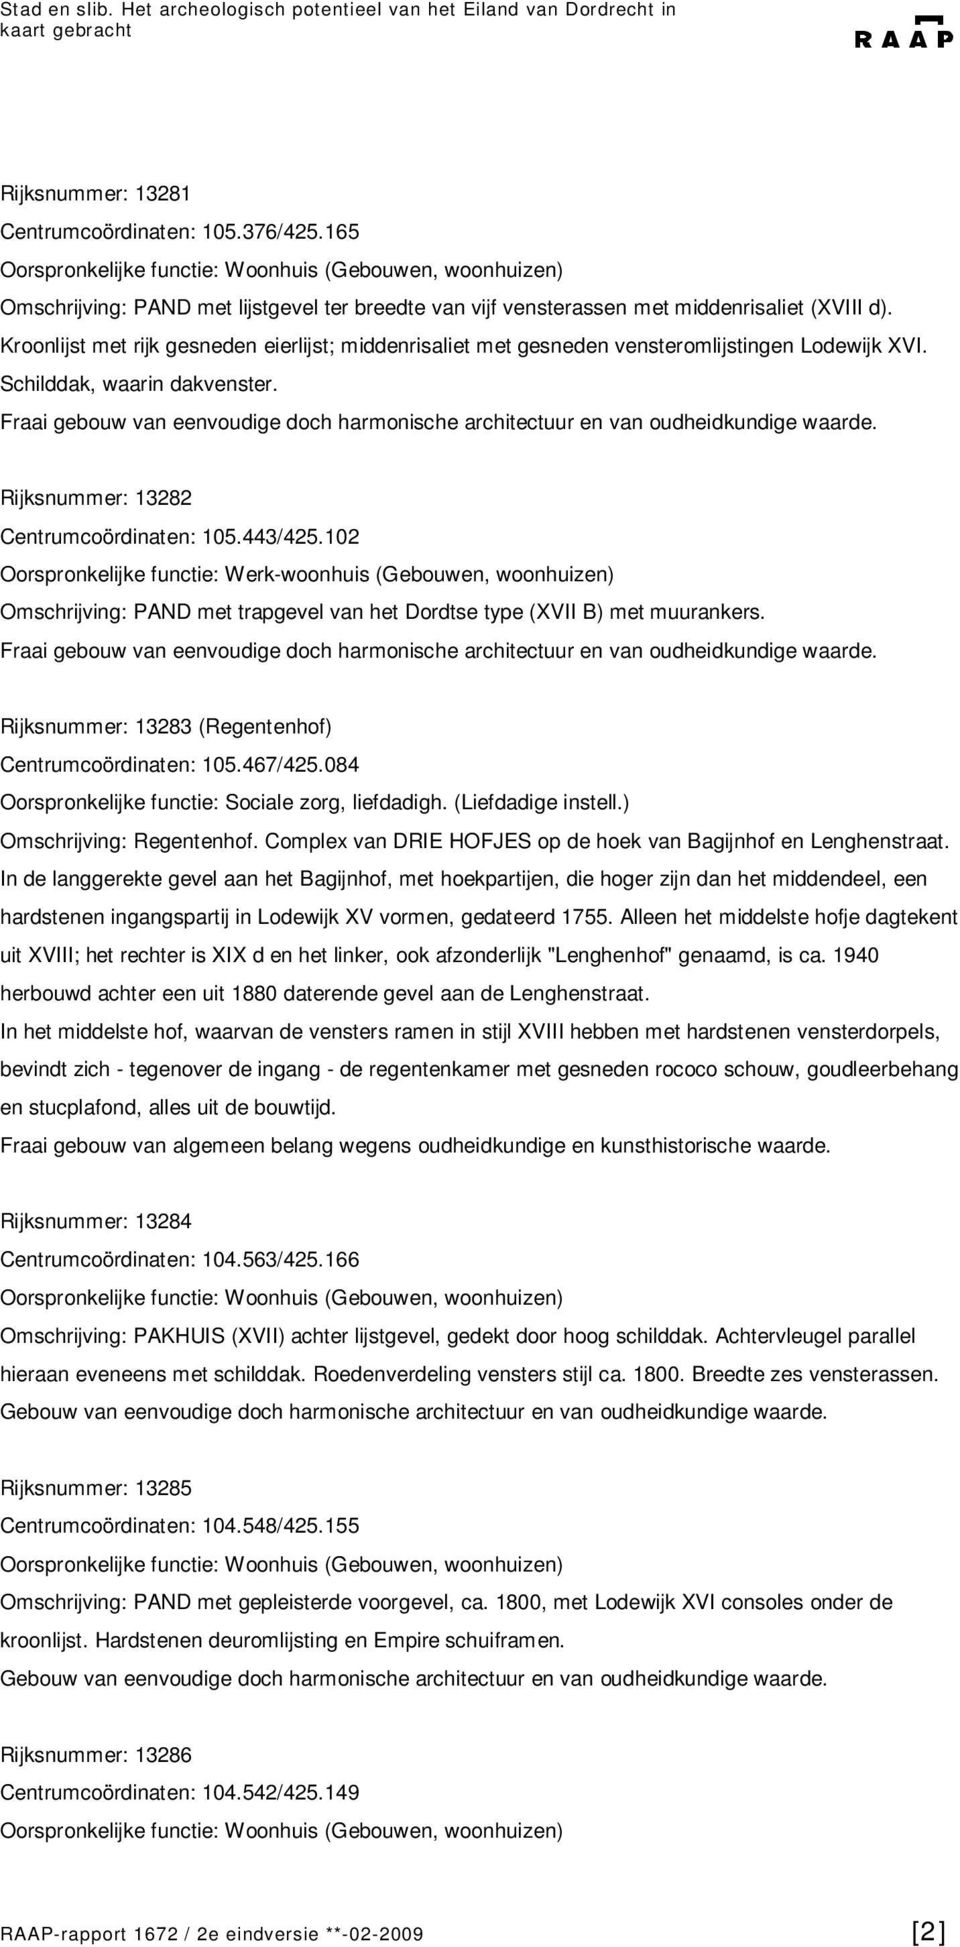 102 Omschrijving: PAND met trapgevel van het Dordtse type (XVII B) met muurankers. Rijksnummer: 13283 (Regentenhof) Centrumcoördinaten: 105.467/425.